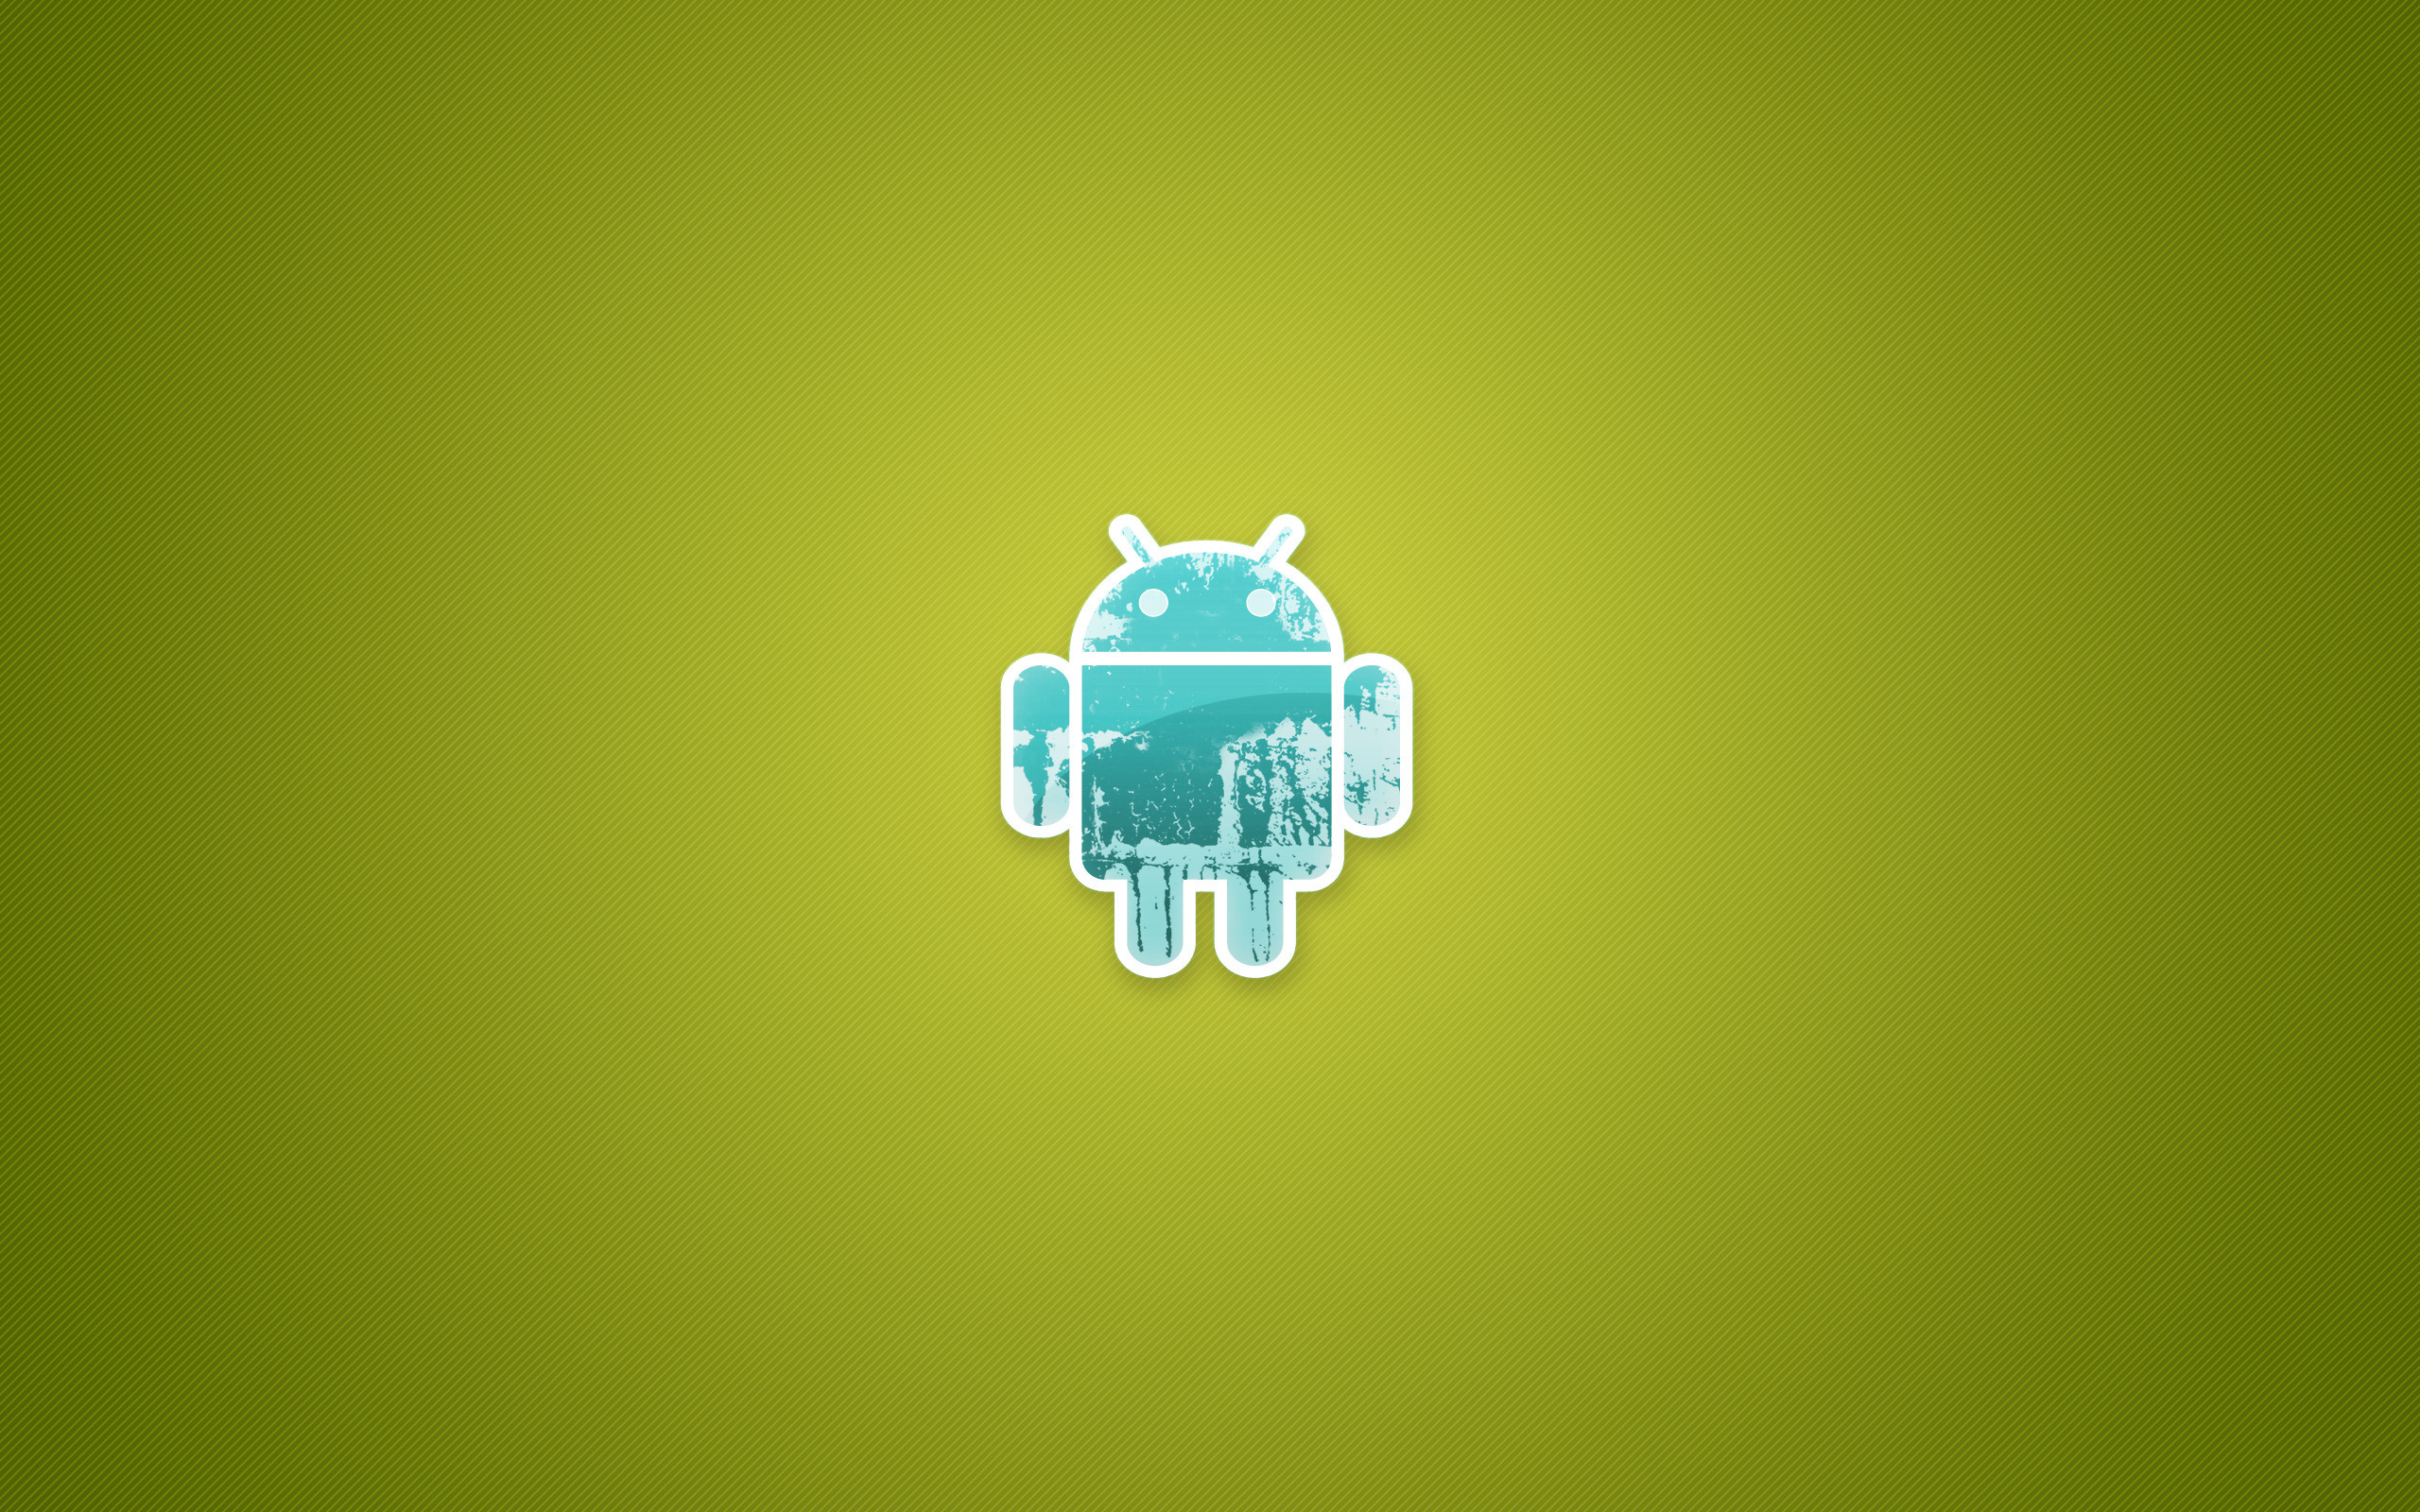 Минималистичный андроид. Обои на андроид. Обои на рабочий стол Android. Логотип андроид. Обои на планшет андроид.